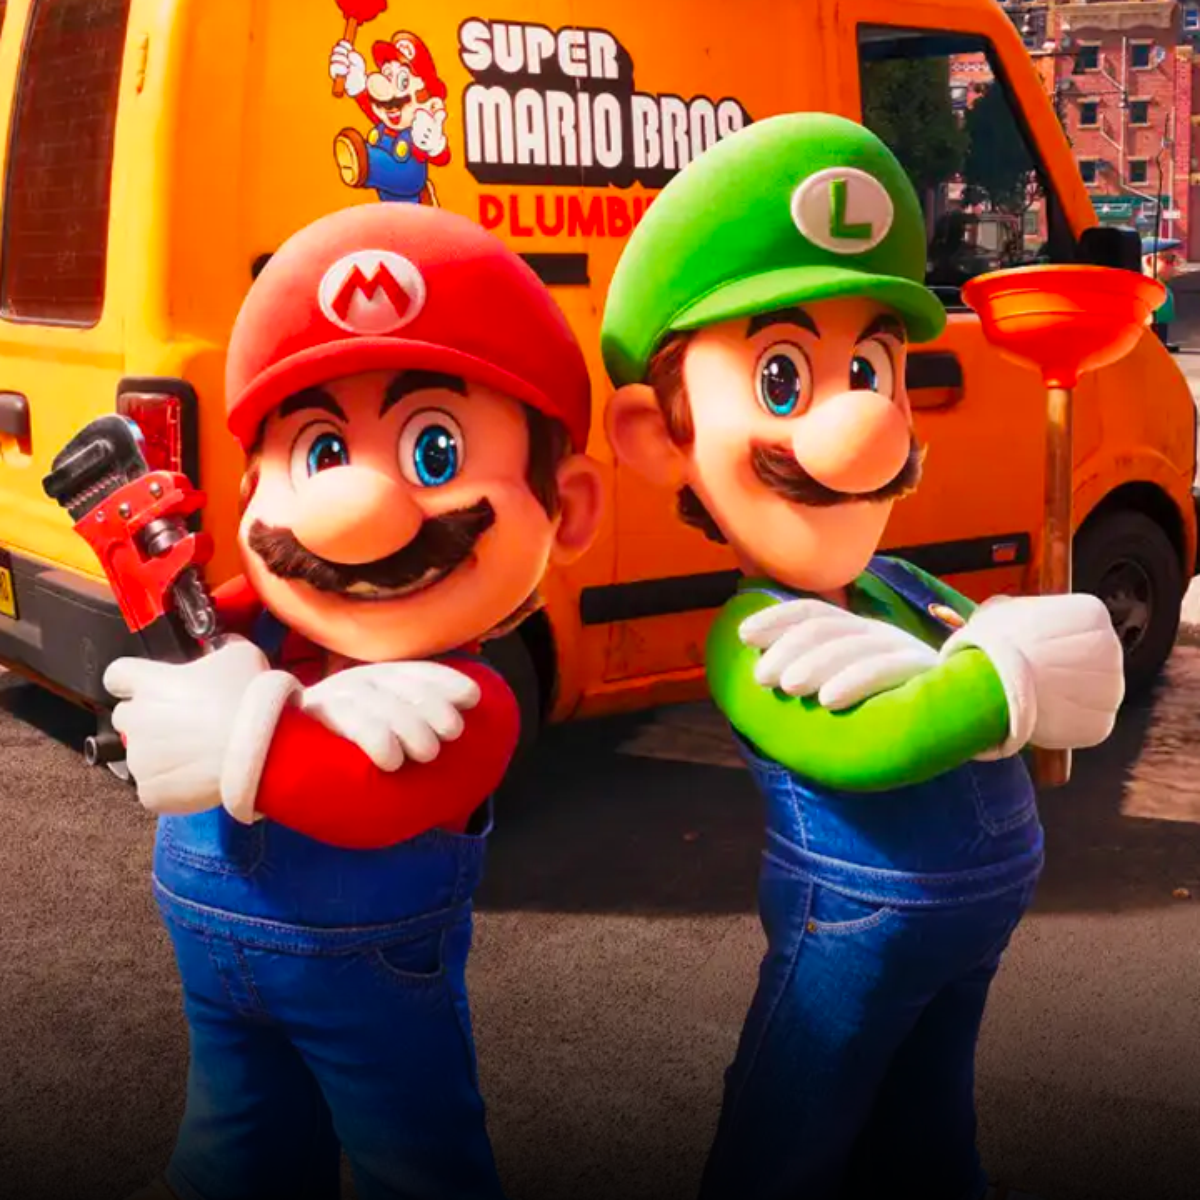 Assista e ouça a música The Super Mario Bros. Movie de Bowser